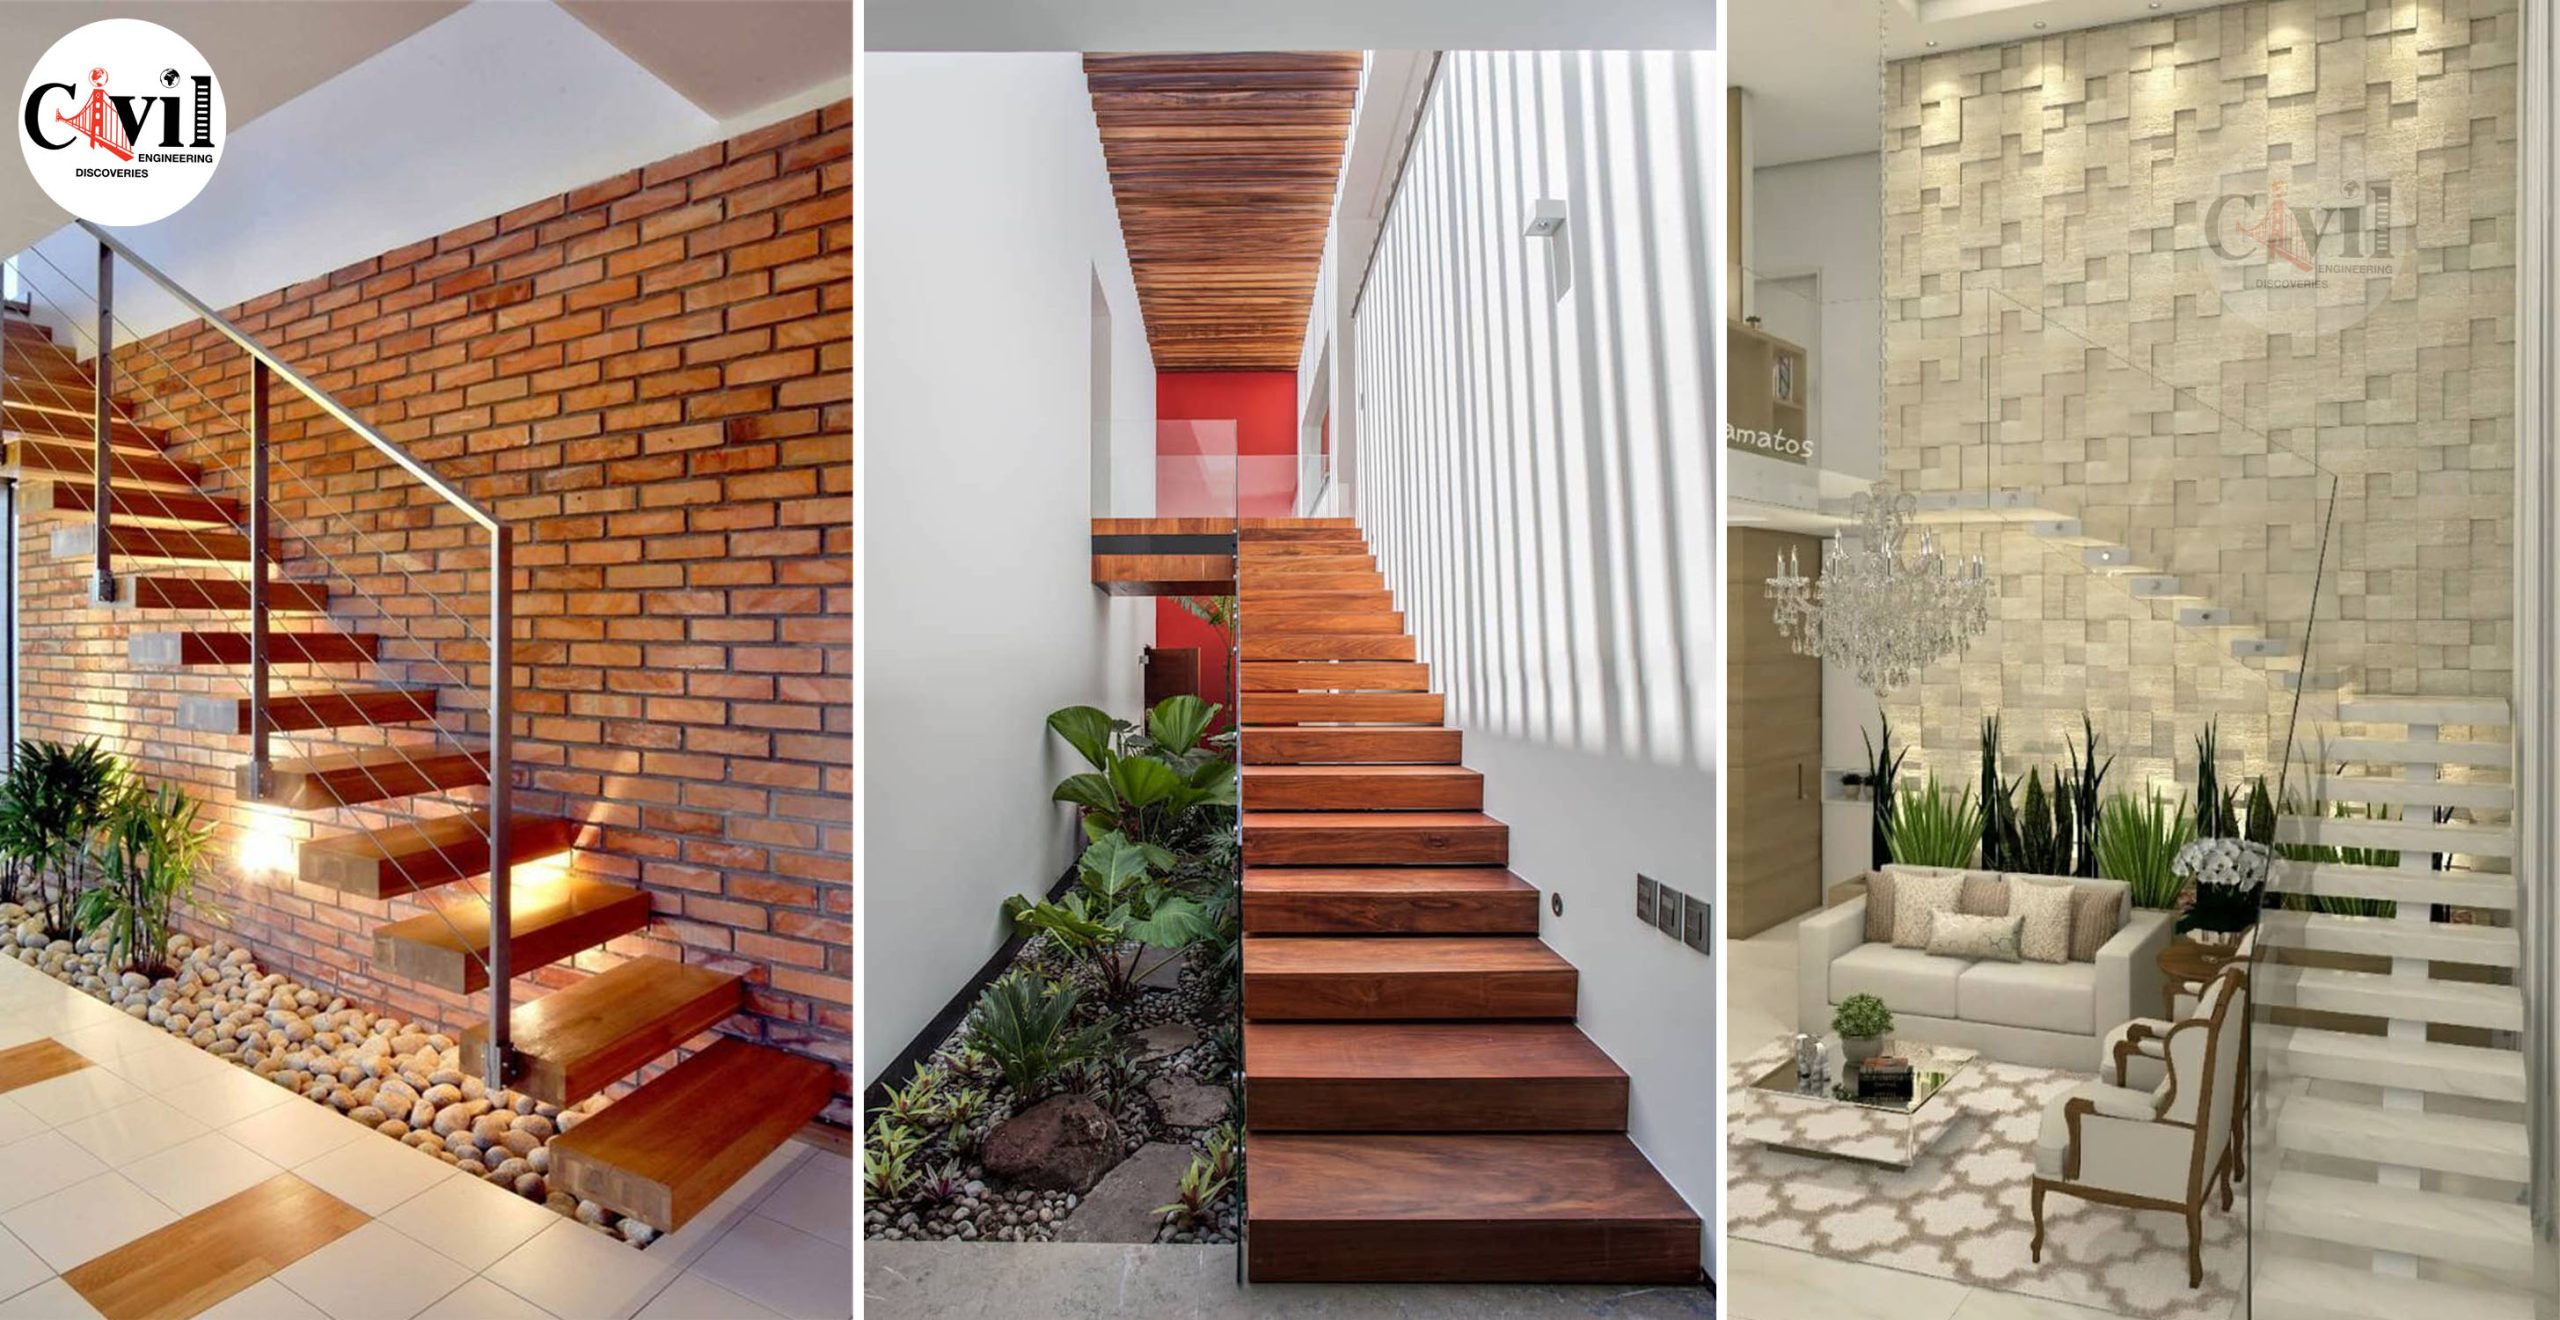 Inspiration Unique Ideas For Indoor Garden Under Stairs ...